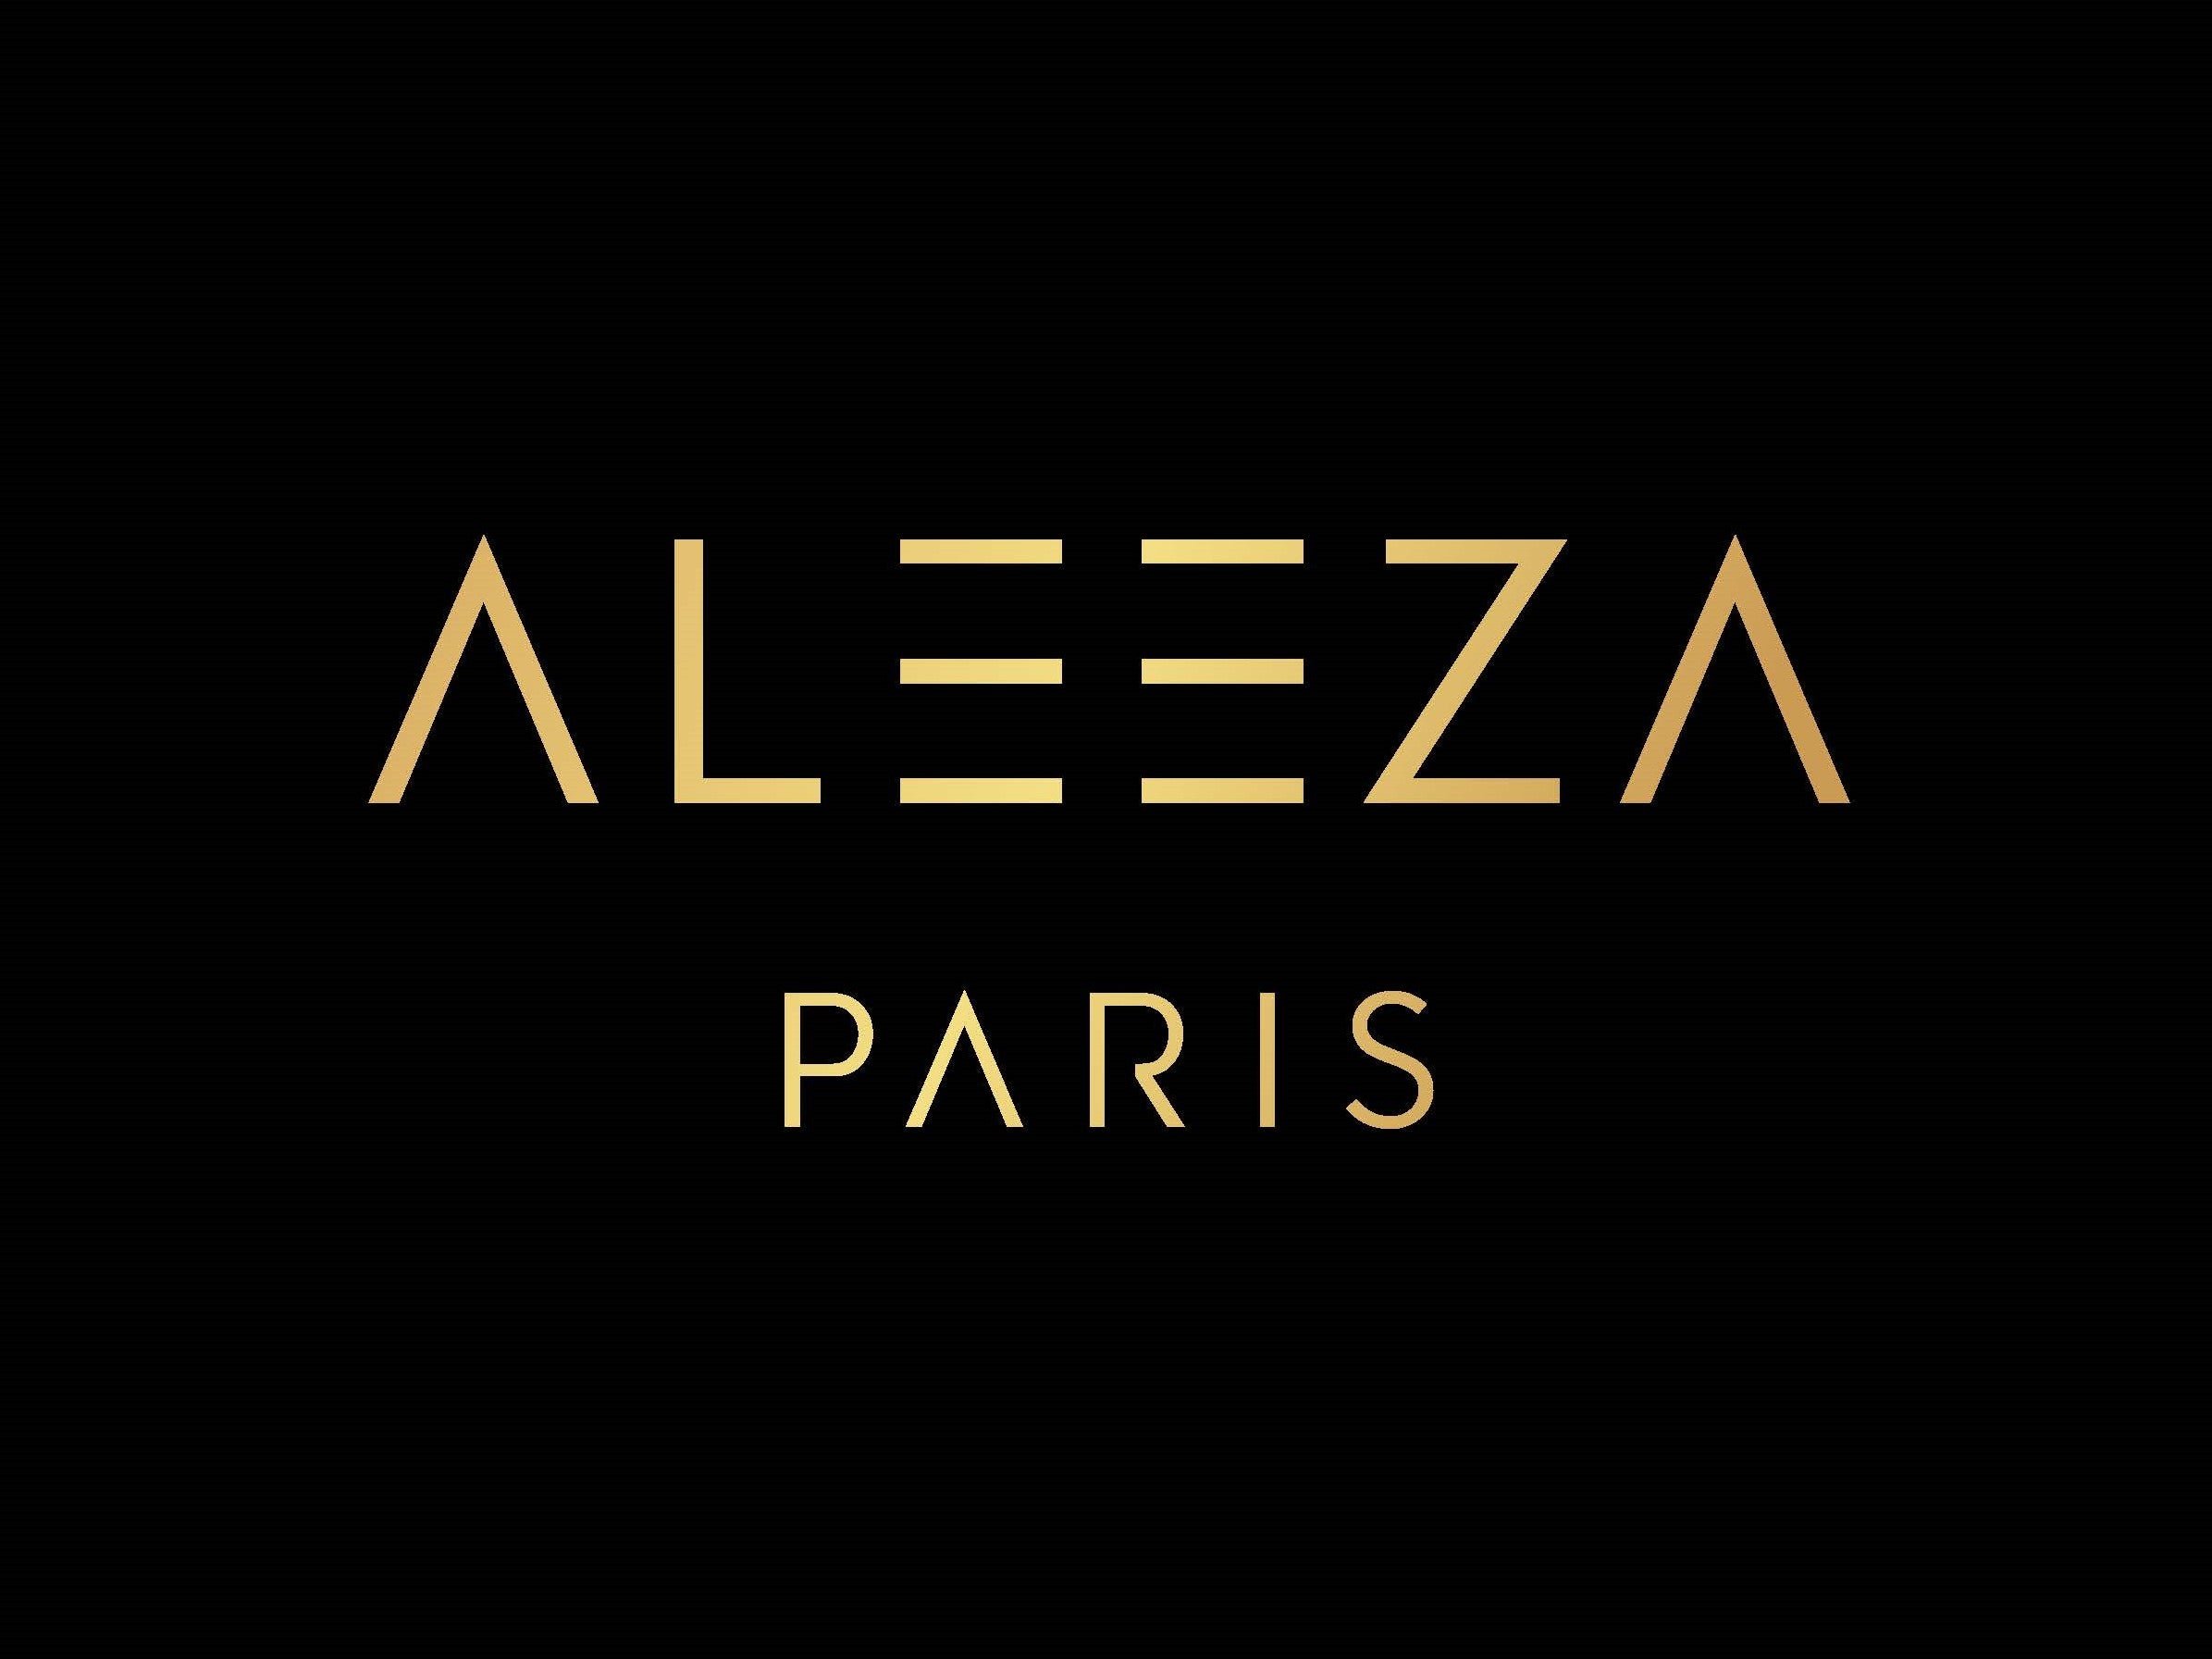 Aleeza Paris